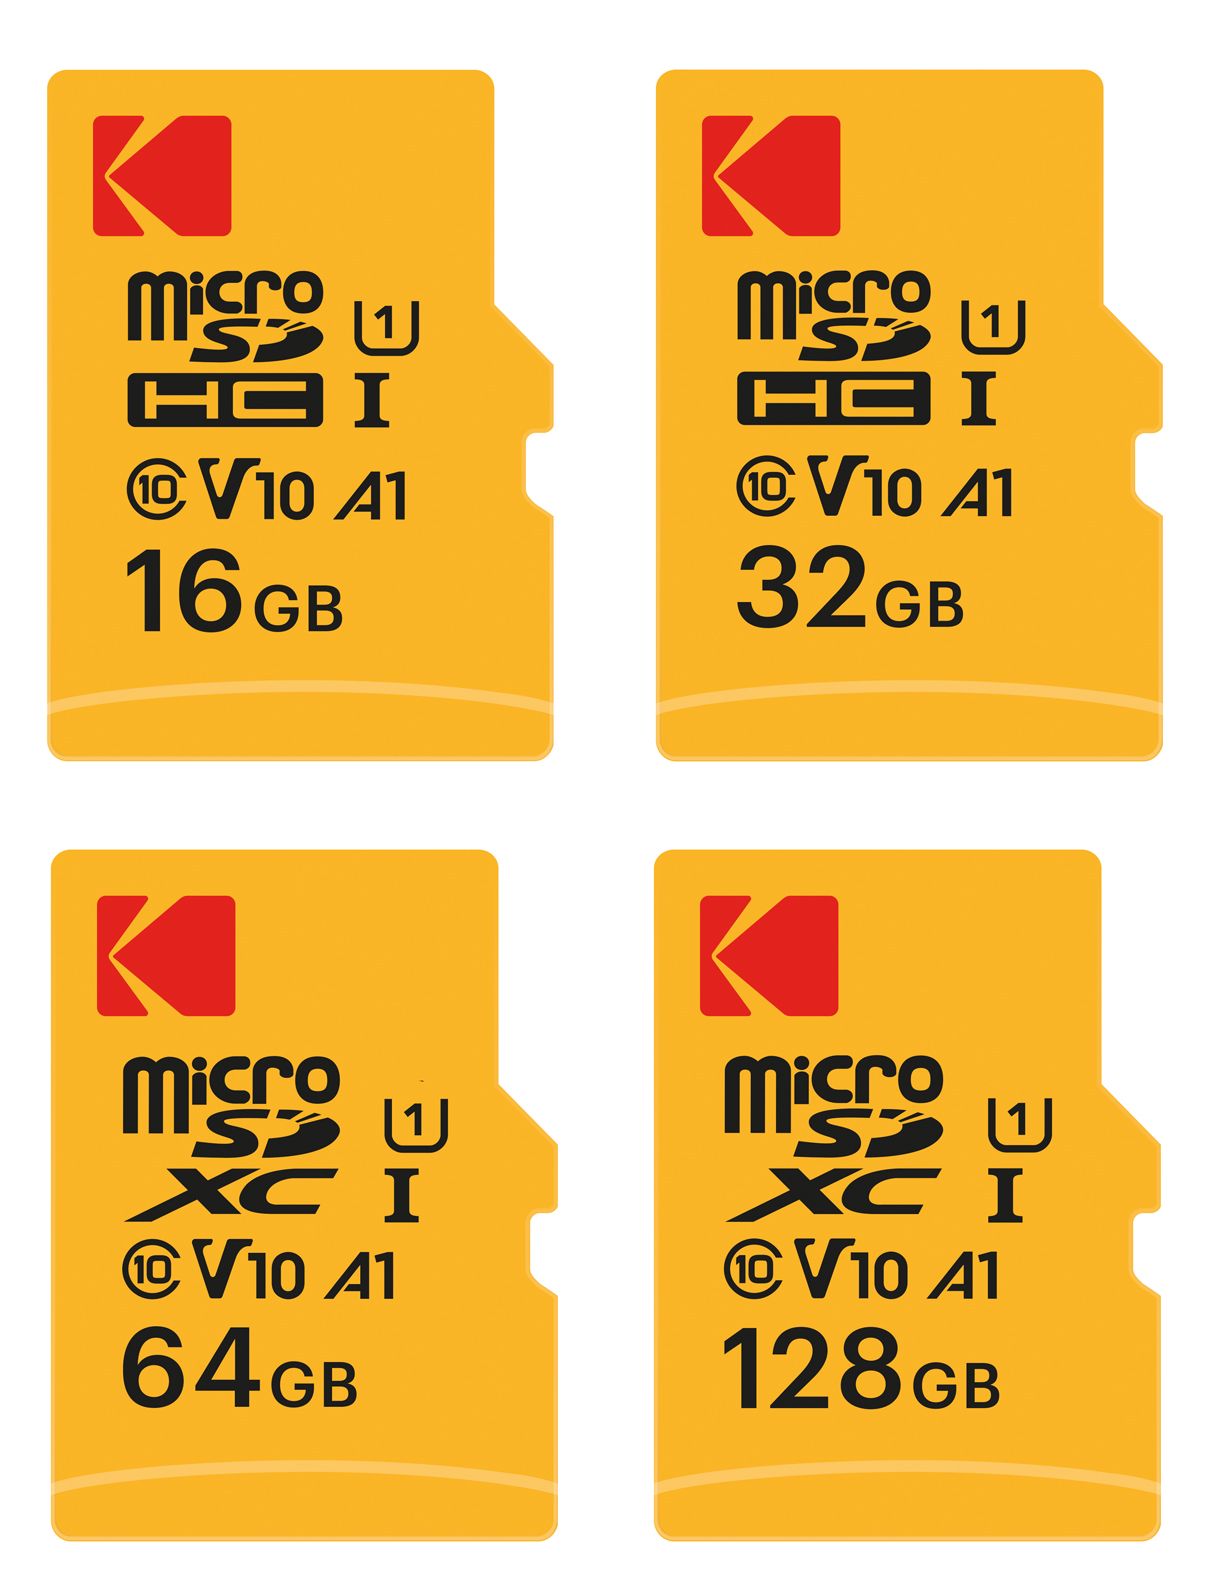 Kodak Micro SD Memory Card